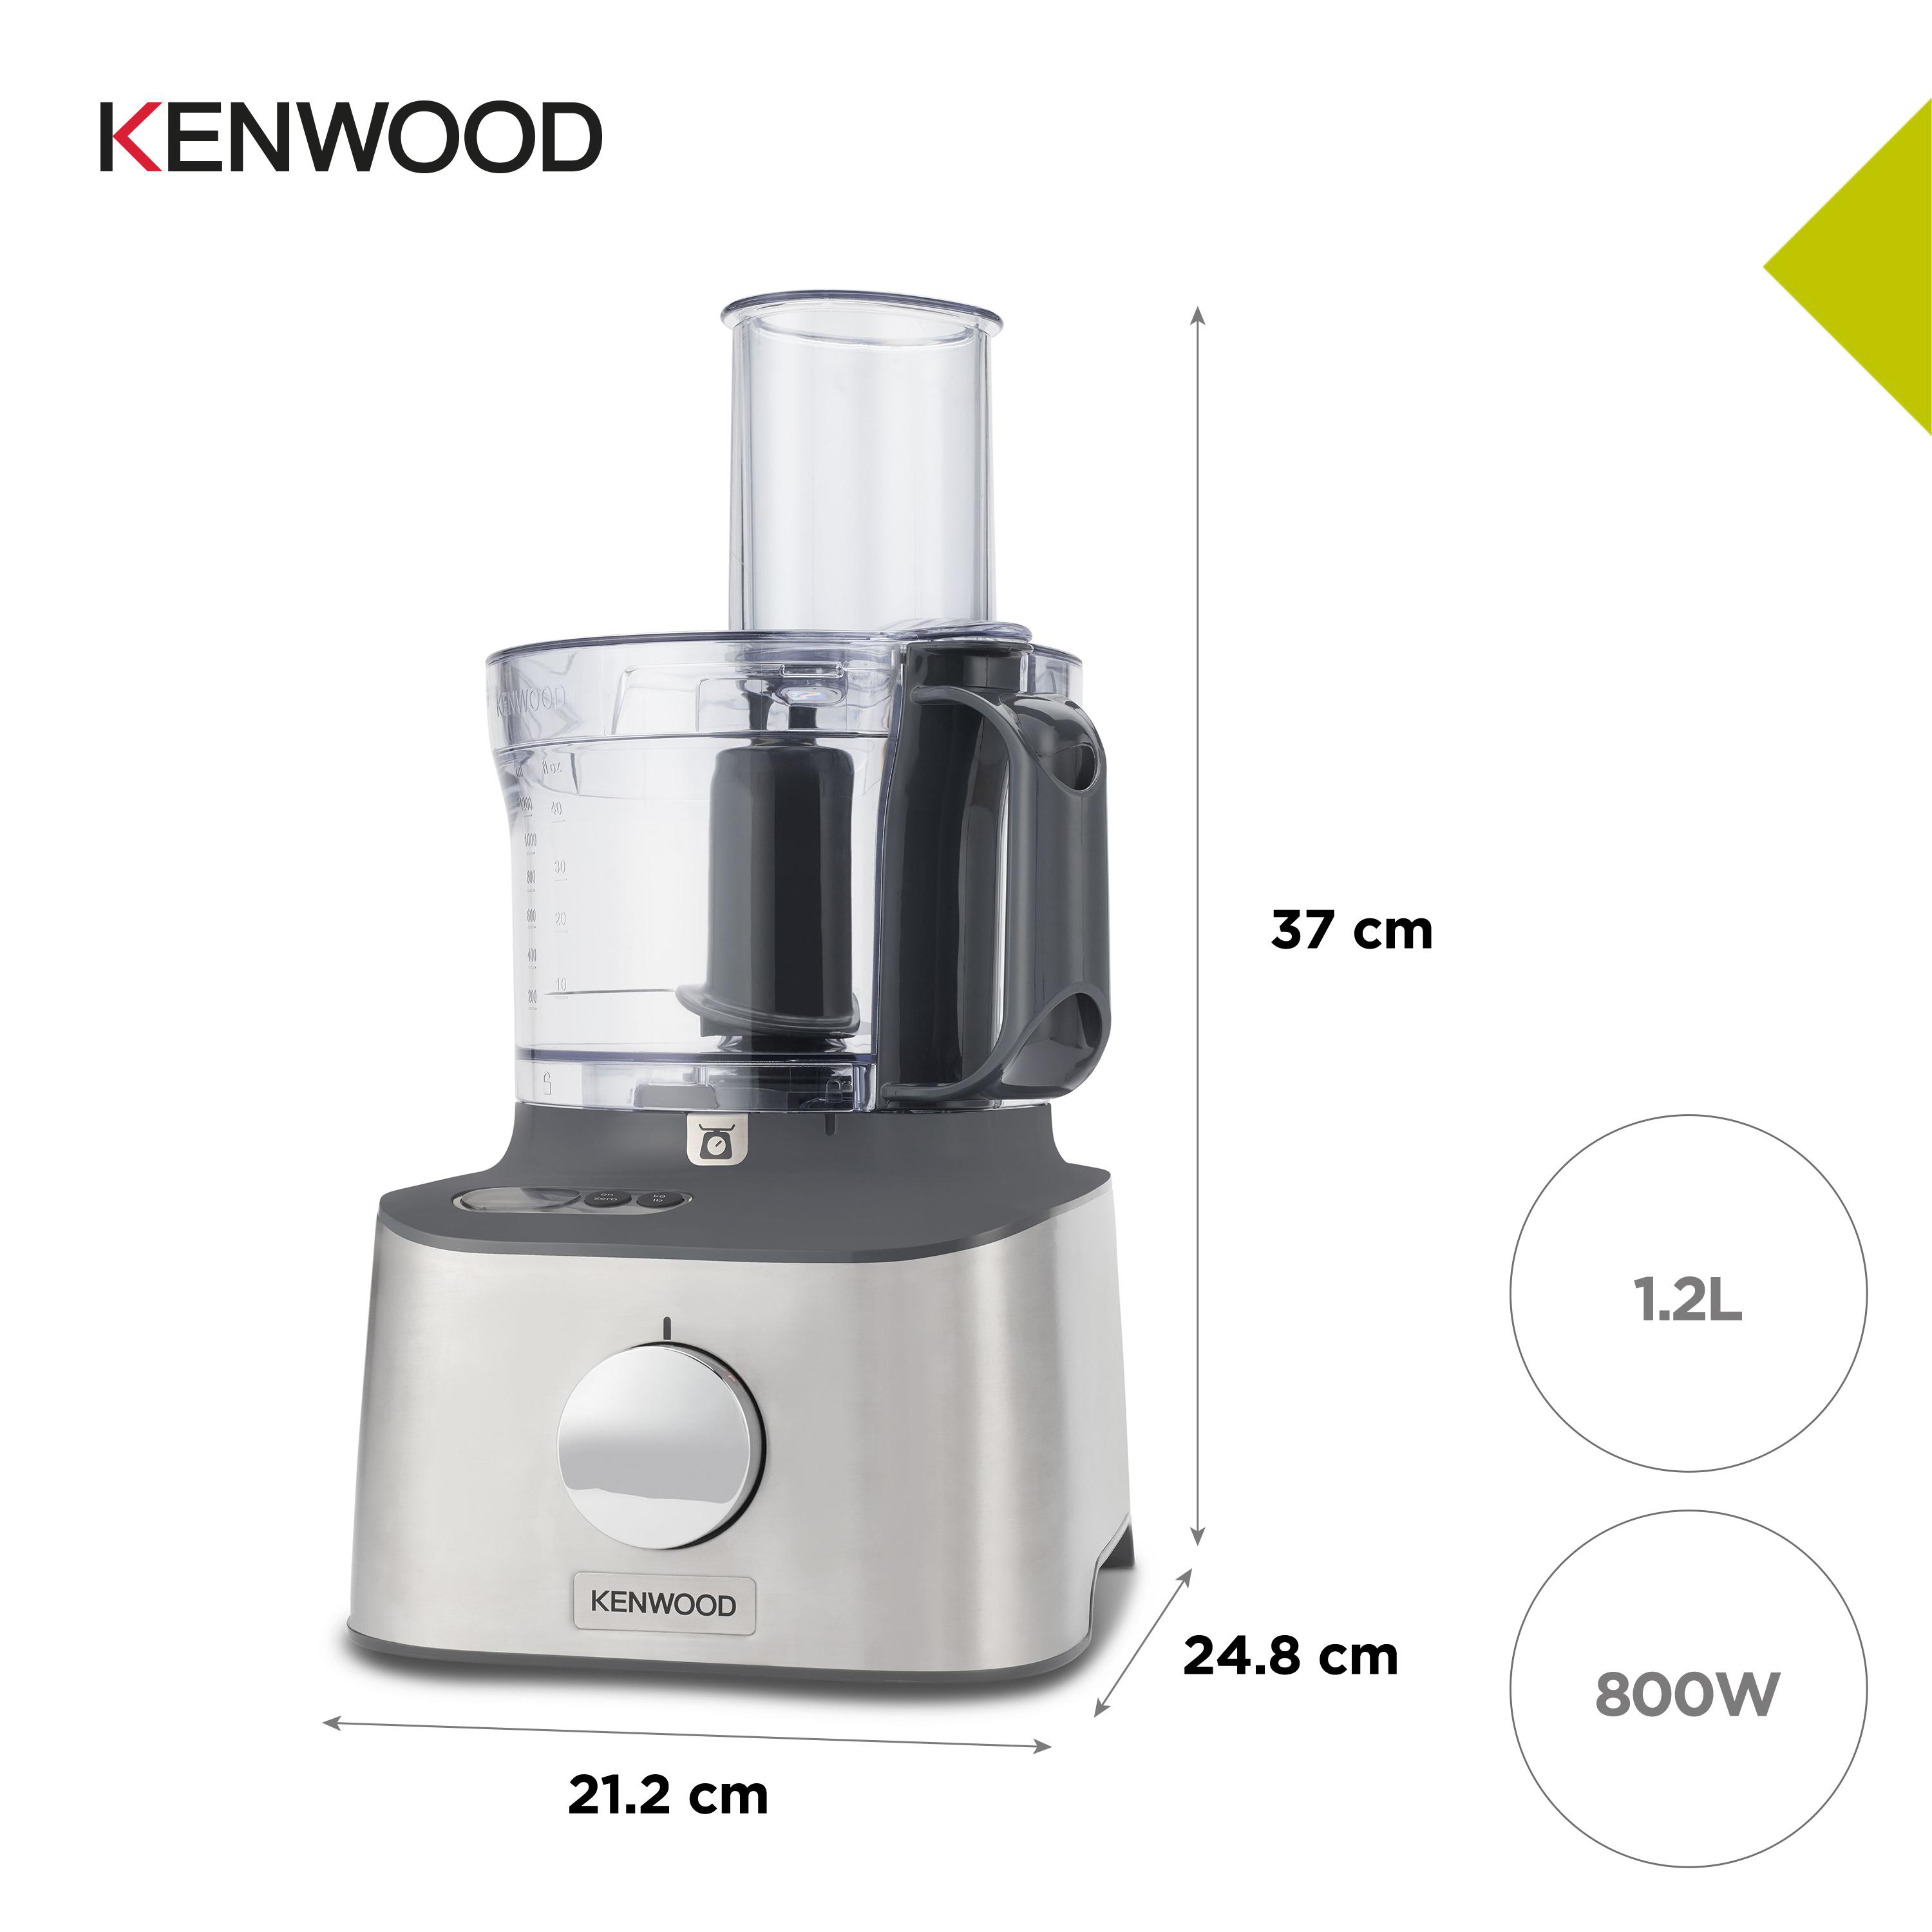 KENWOOD FDM313SS Kompaktküchenmaschine Silber 2,1 Multipro (Rührschüsselkapazität: 800 Compact+ Watt) l,